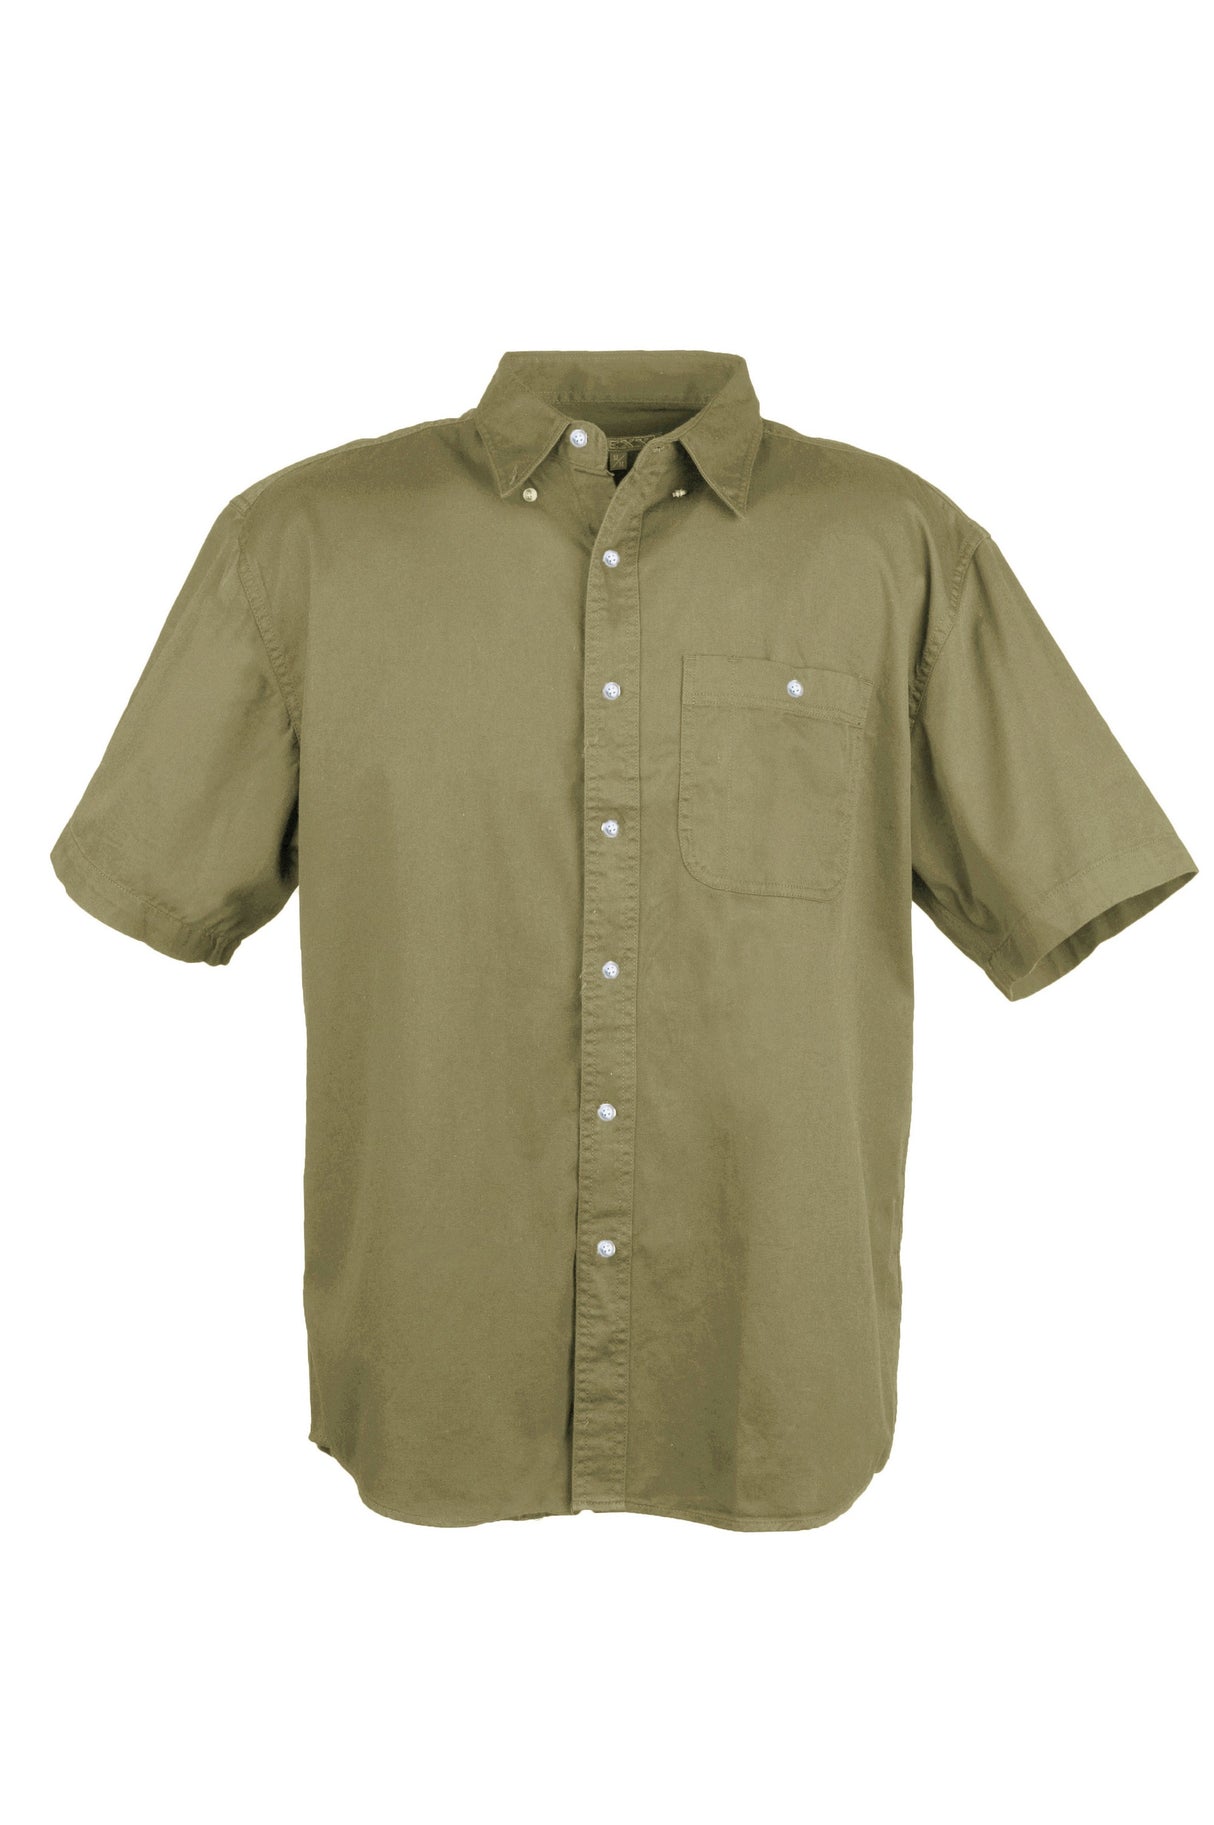 Men's 100% Cotton Twill Short Sleeve Shirt Tall (Beige) (LT-3XLT)